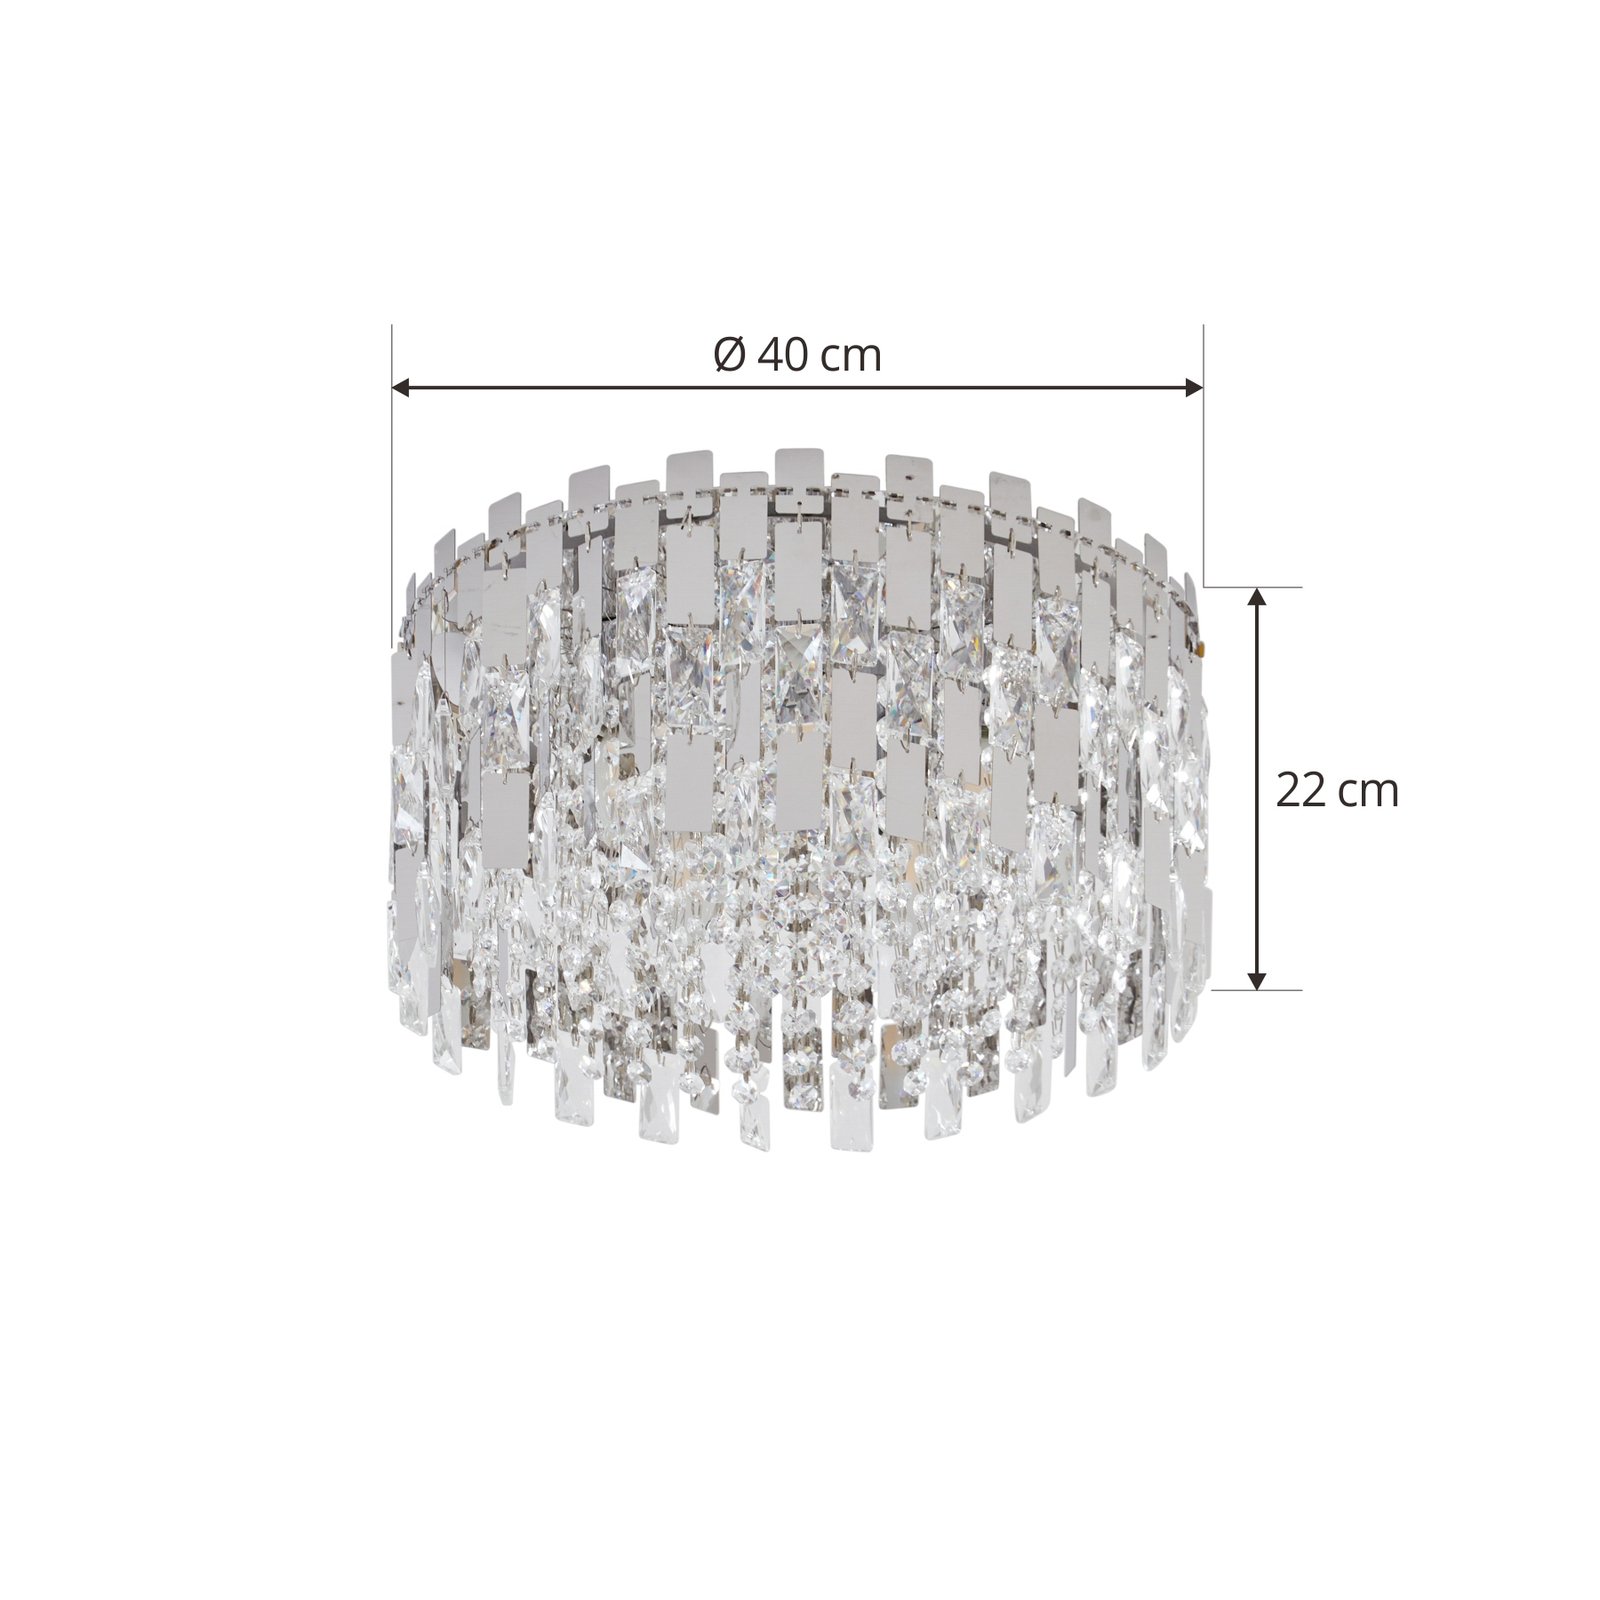 Lucande Arcan ceiling light, chrome, crystal glass, Ø 40 cm